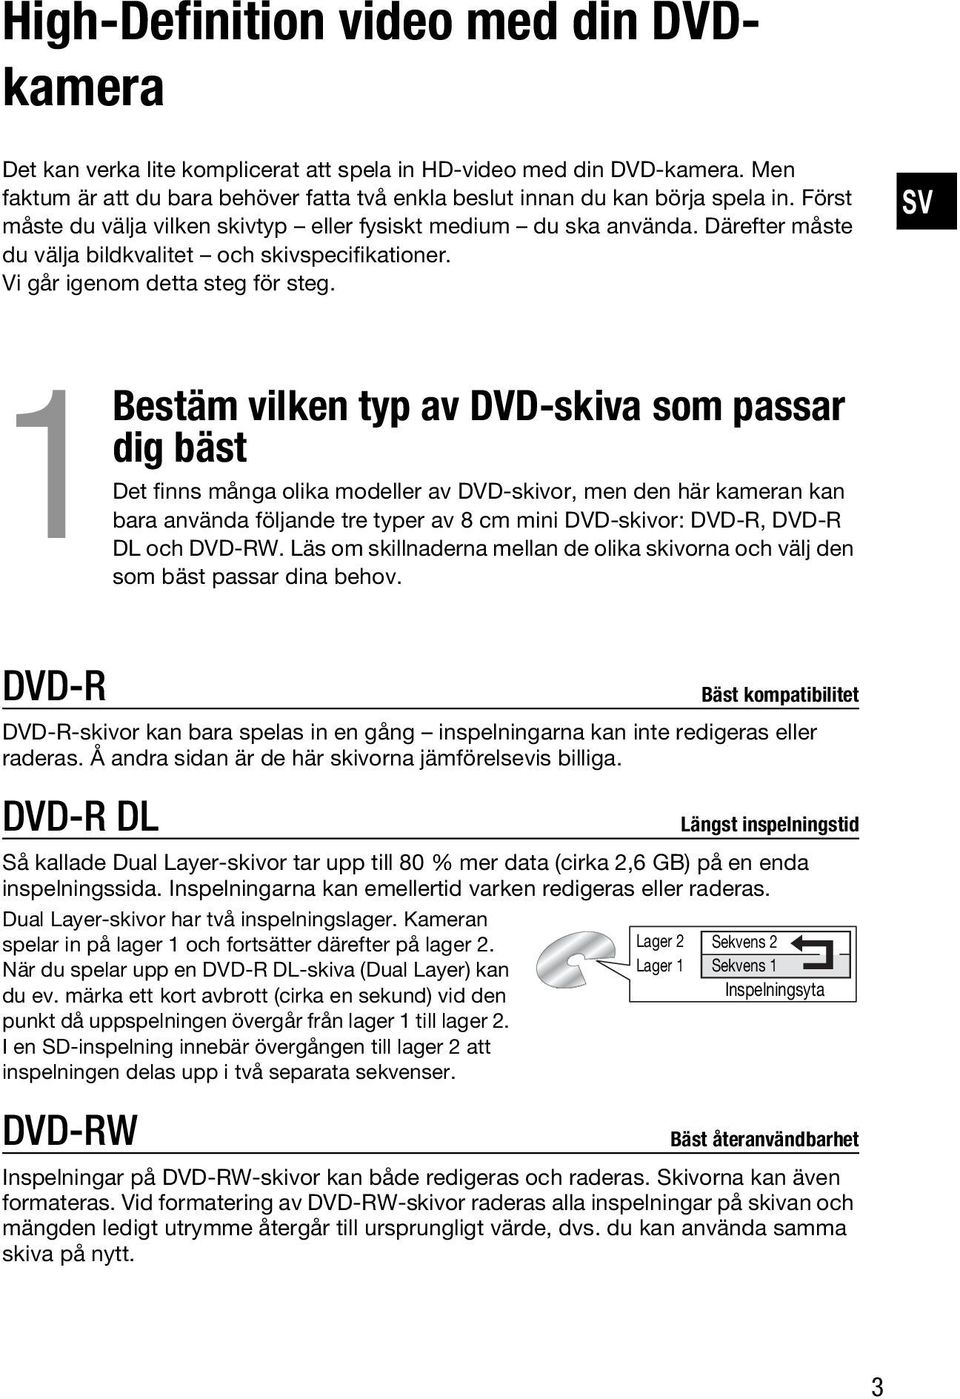 SV 1 Bestäm vilken typ av DVD-skiva som passar dig bäst Det finns många olika modeller av DVD-skivor, men den här kameran kan bara använda följande tre typer av 8 cm mini DVD-skivor: DVD-R, DVD-R DL